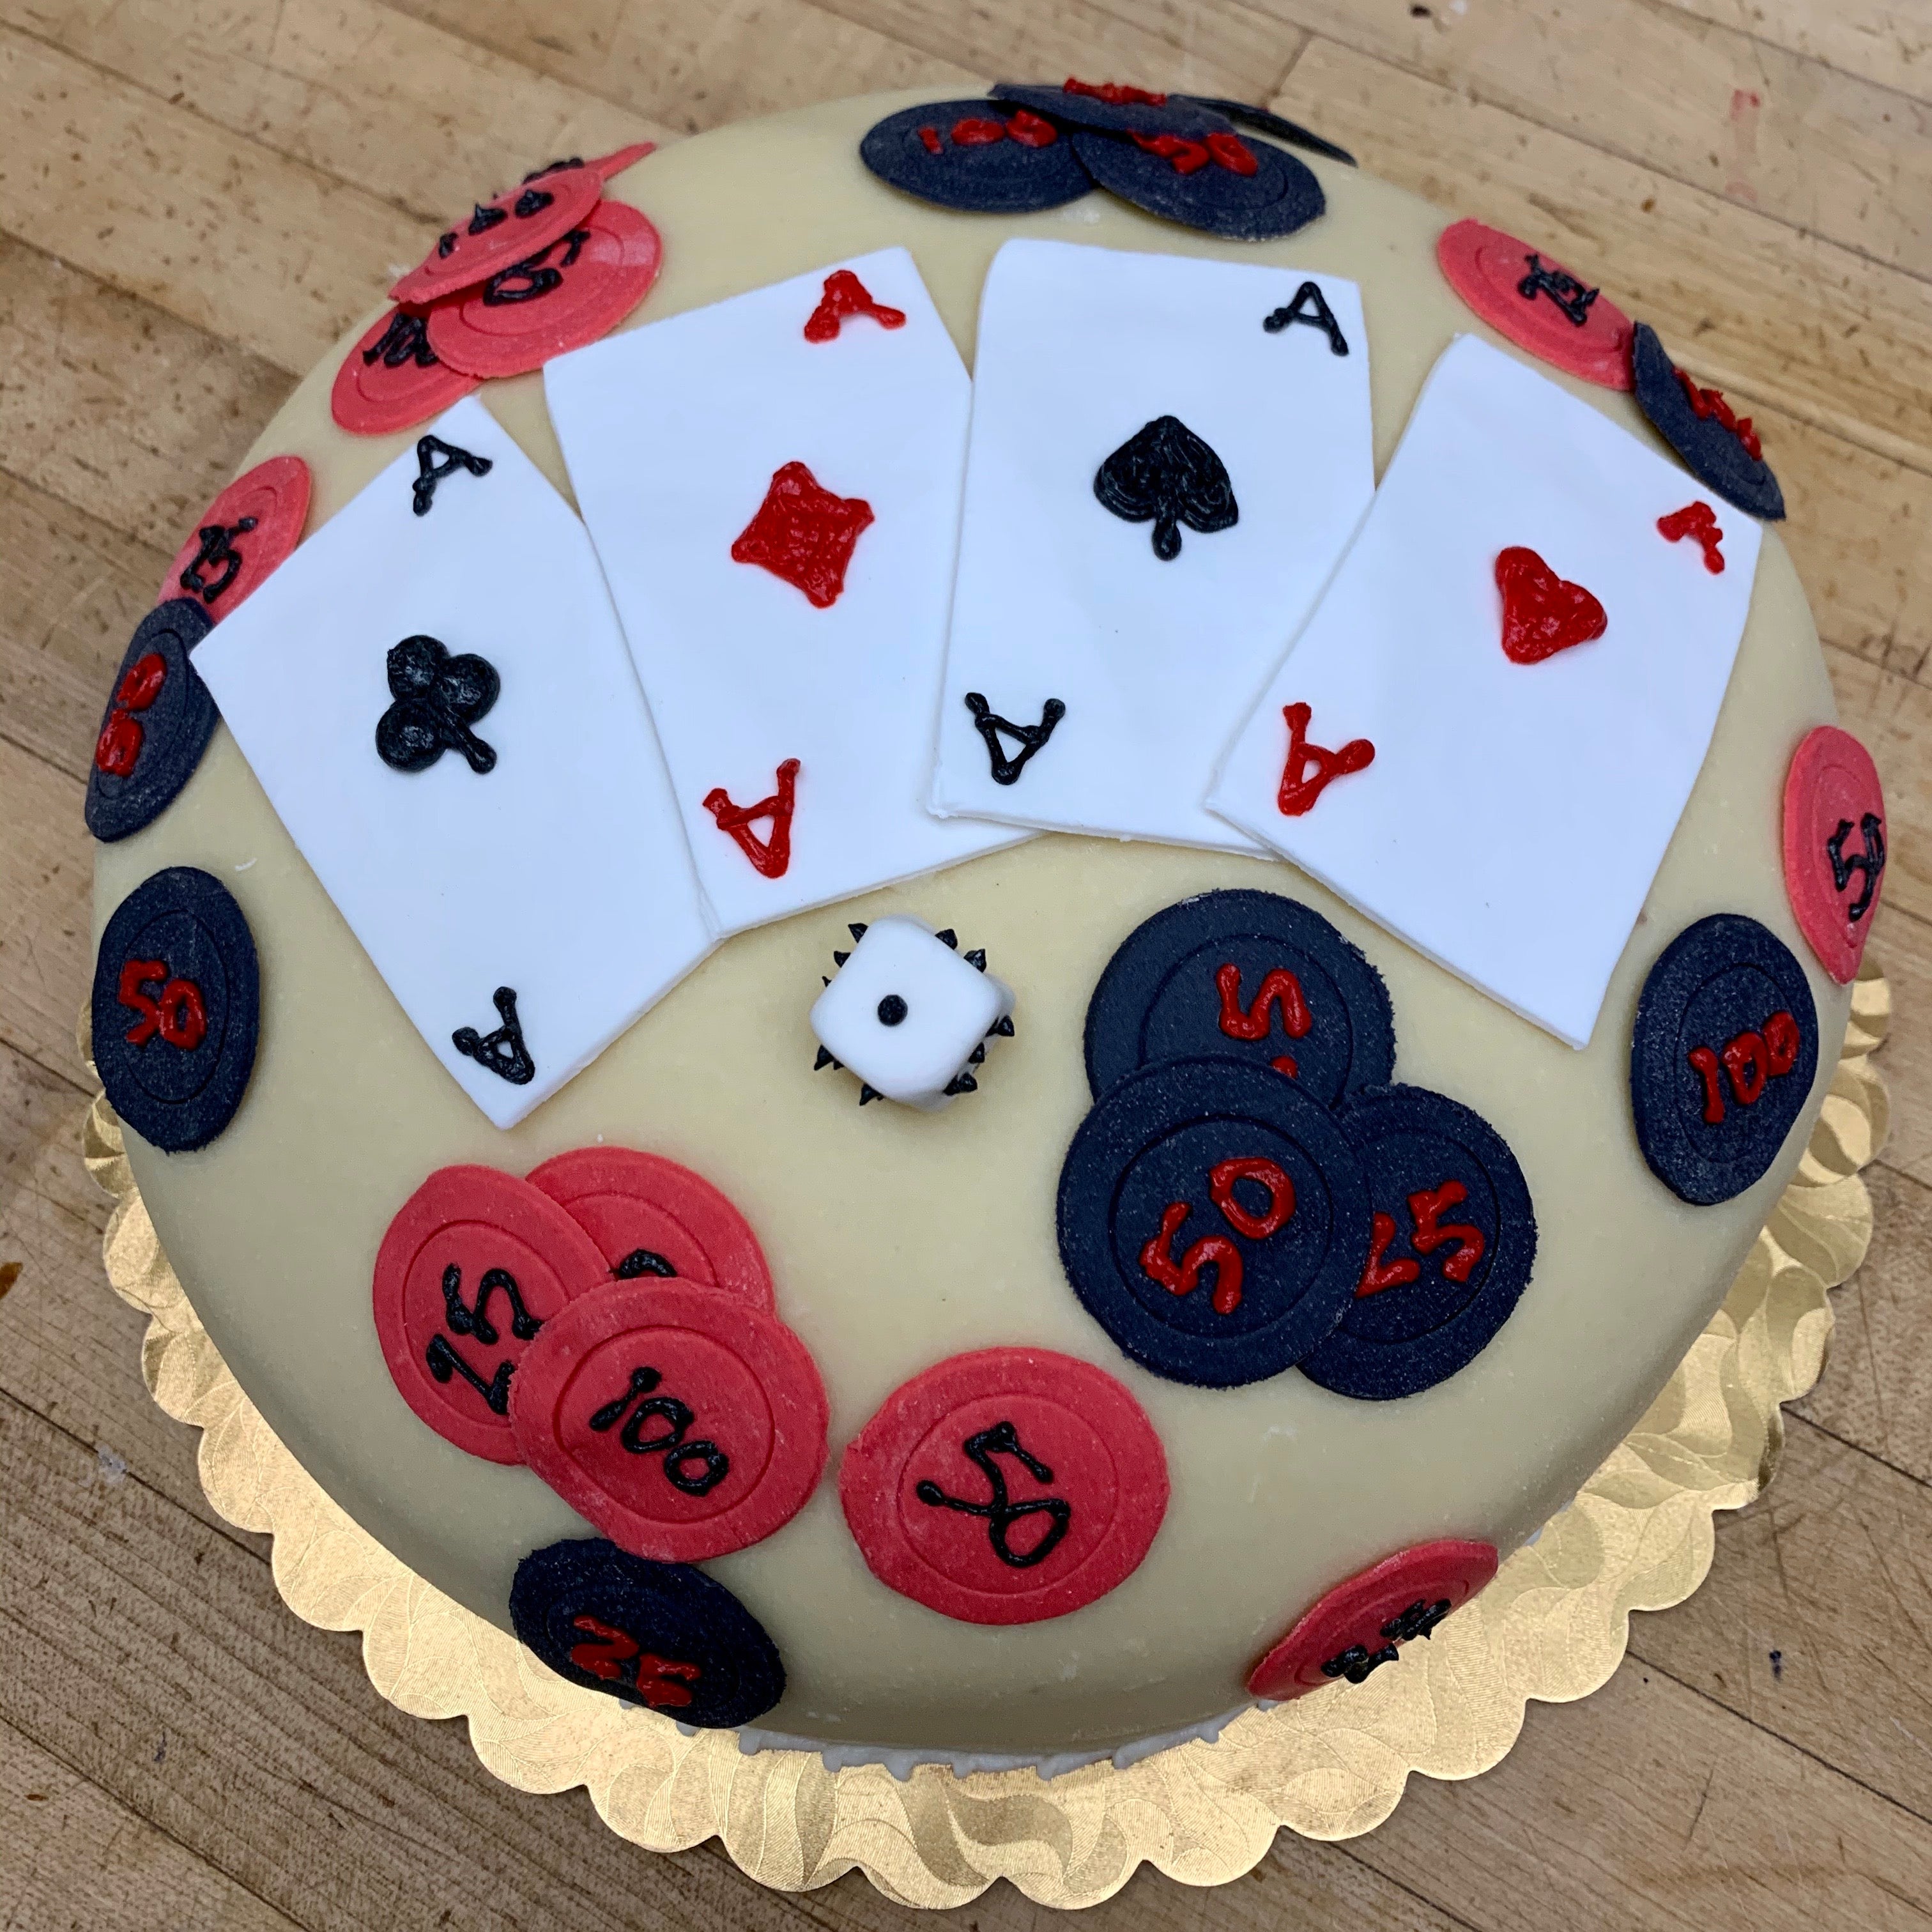 pokercake #pokerchips #poker #birthday #cake #cakedecorating #playingcards  #sweet #cakecreationsbylucky | Casino cakes, Poker cake, Themed cakes